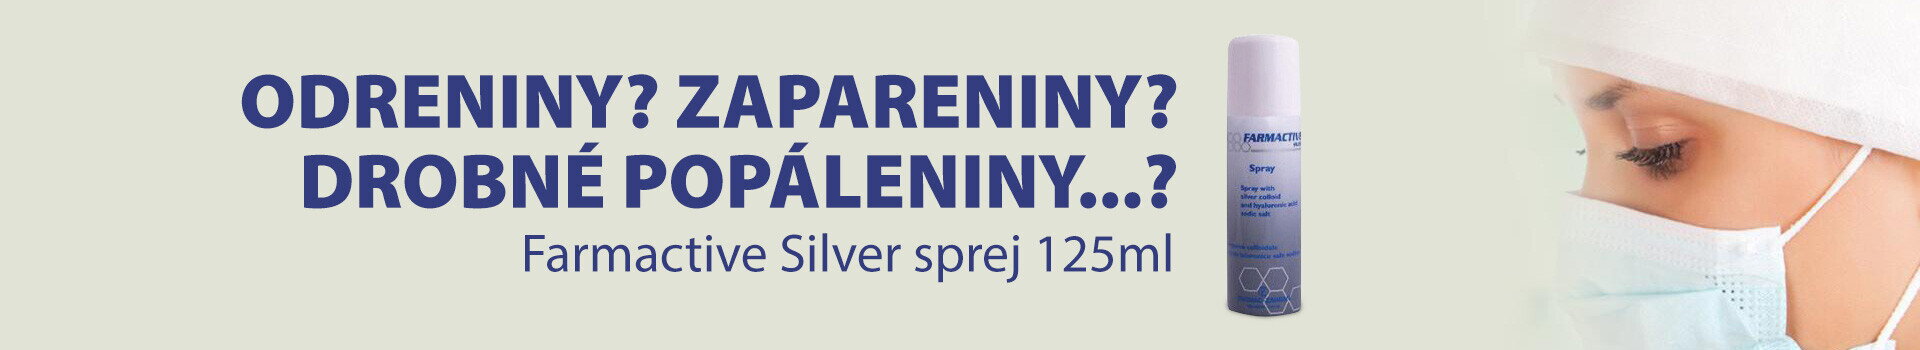 banner Farmactive Silver